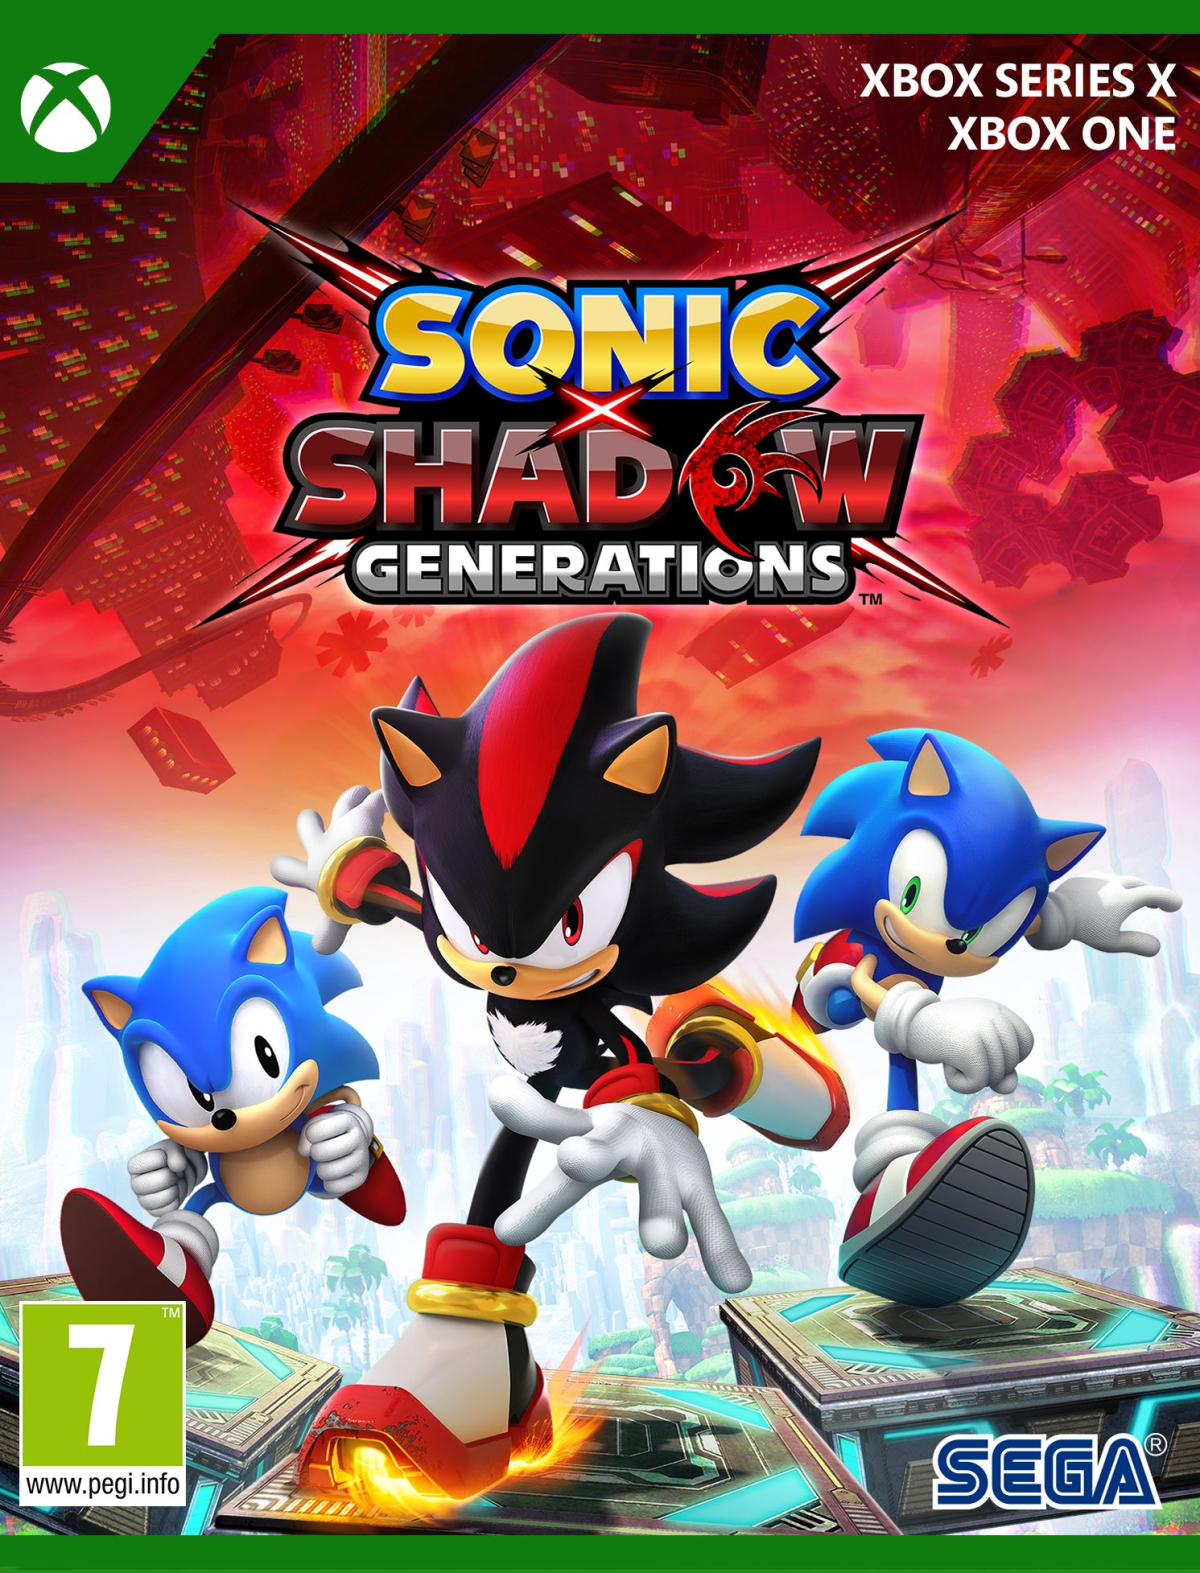 XBOXOne/SeriesX Sonic X Shadow Generations